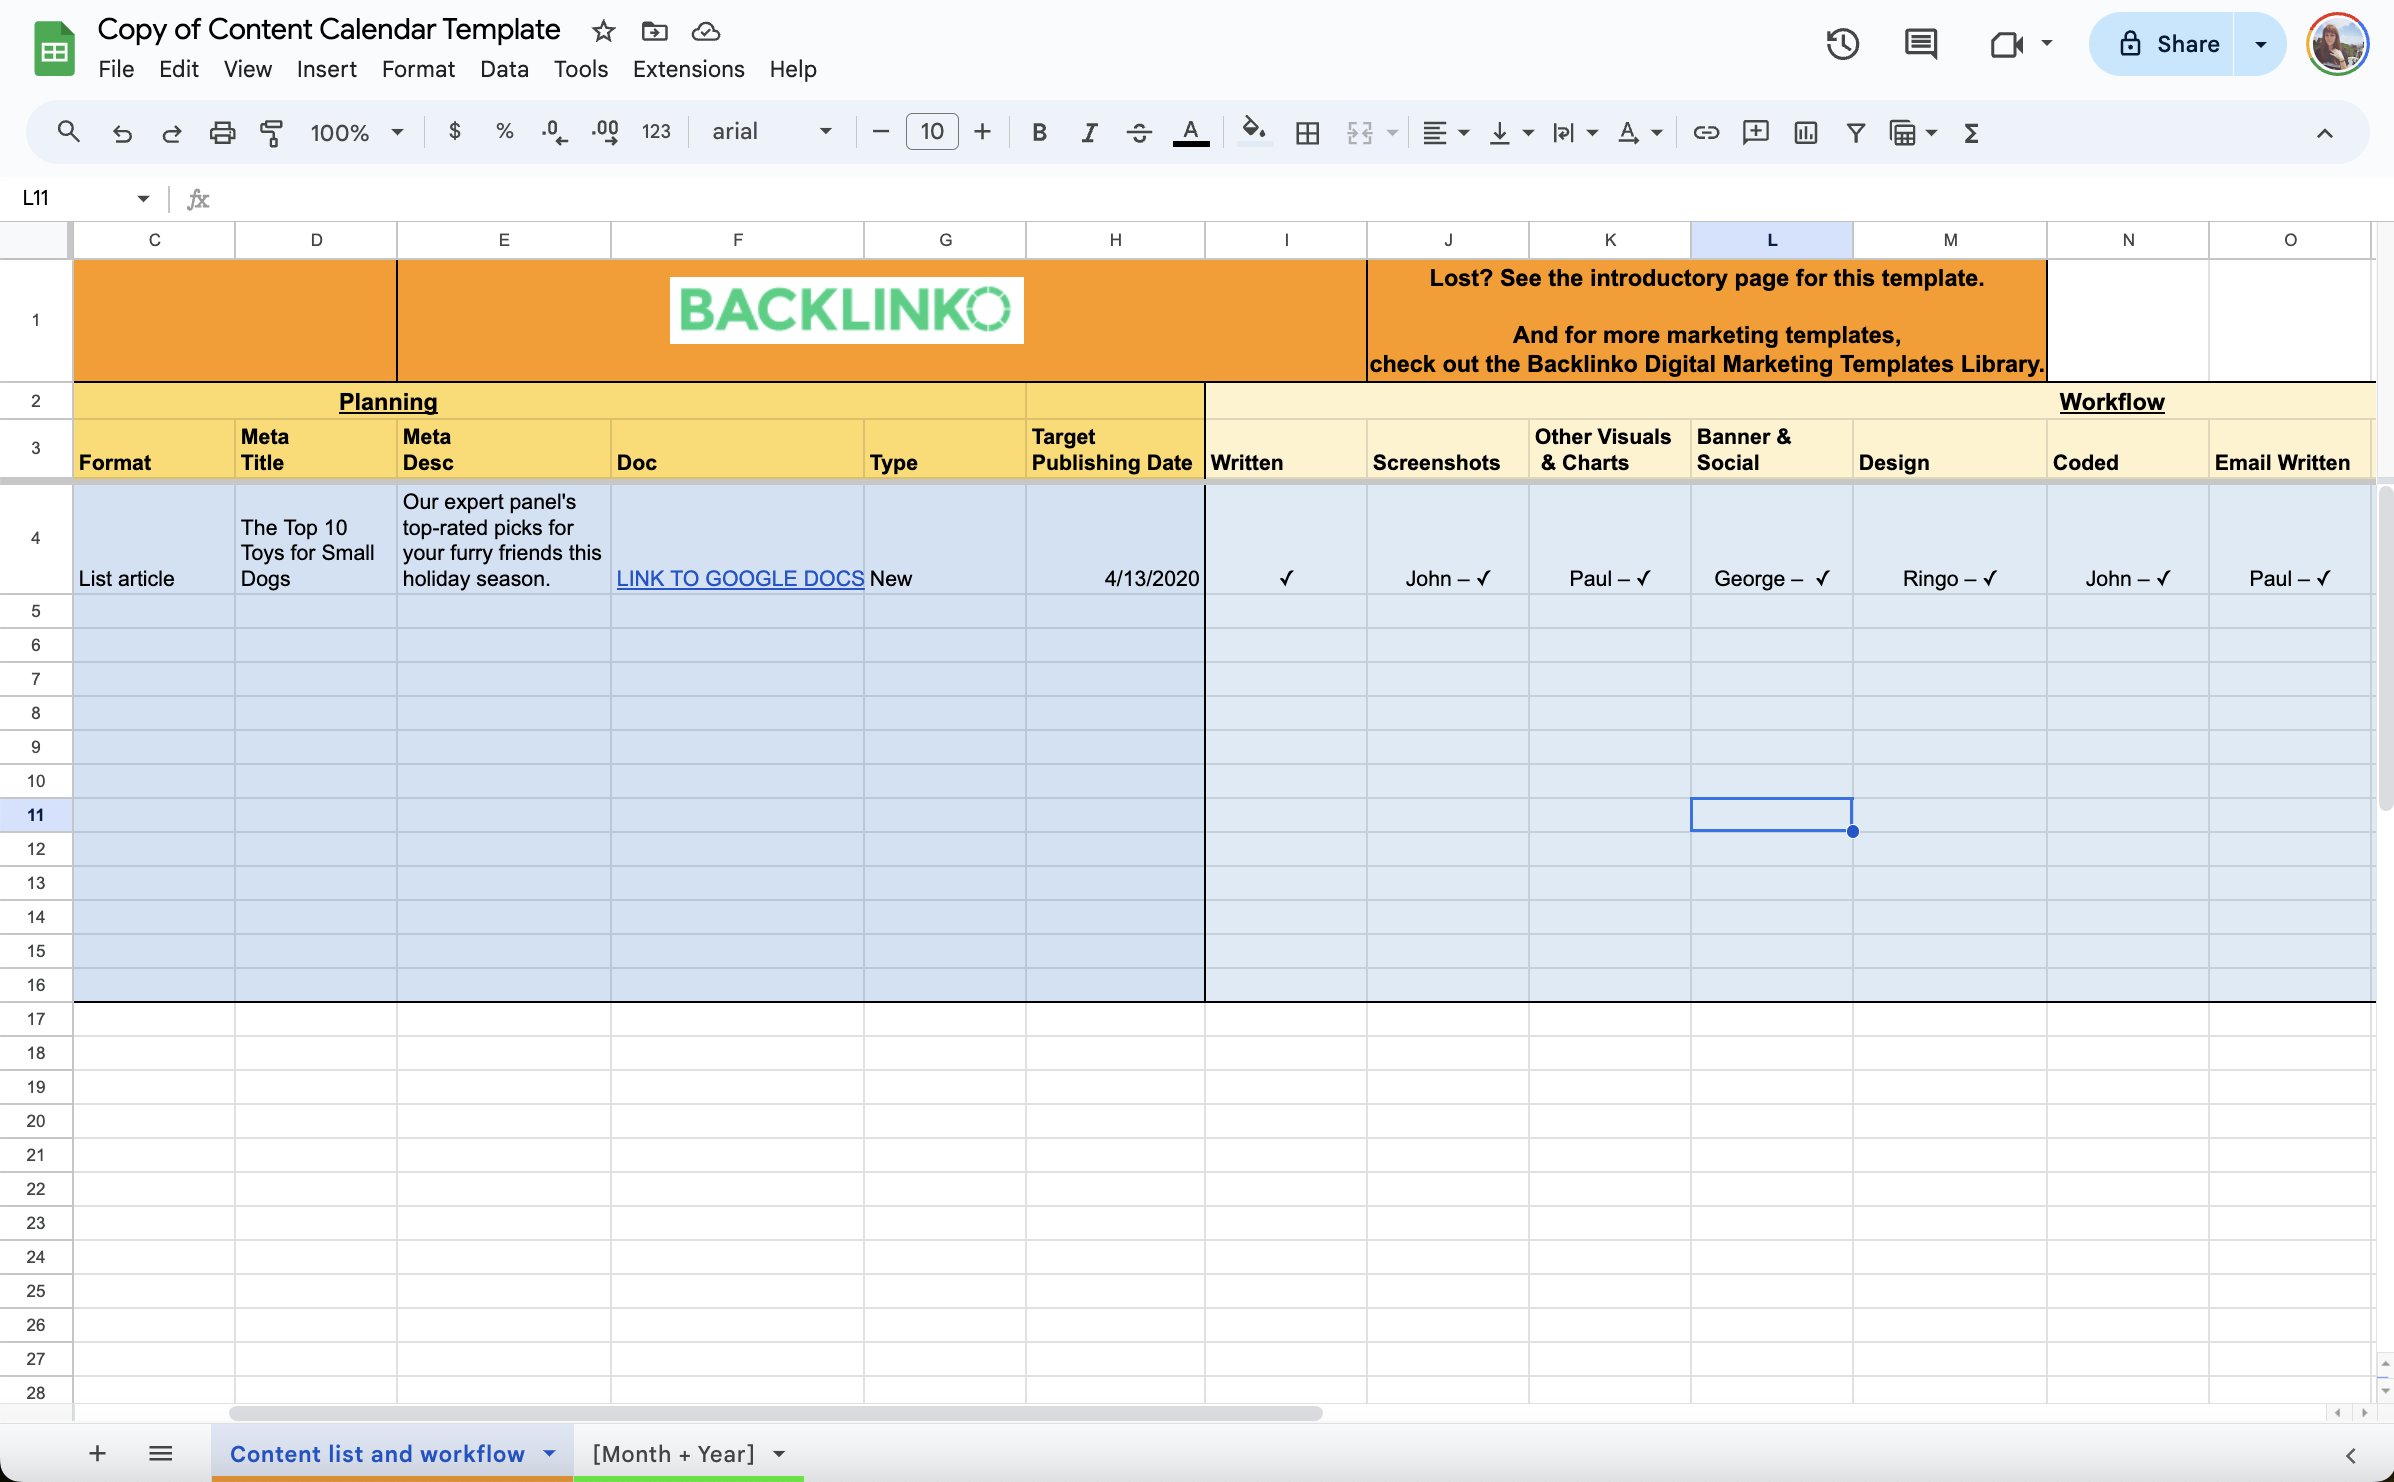 A screenshot of Backlinko content calendar template spreadsheet featuring columns for date, format, title, main message, tasks, owner, banner, design. 